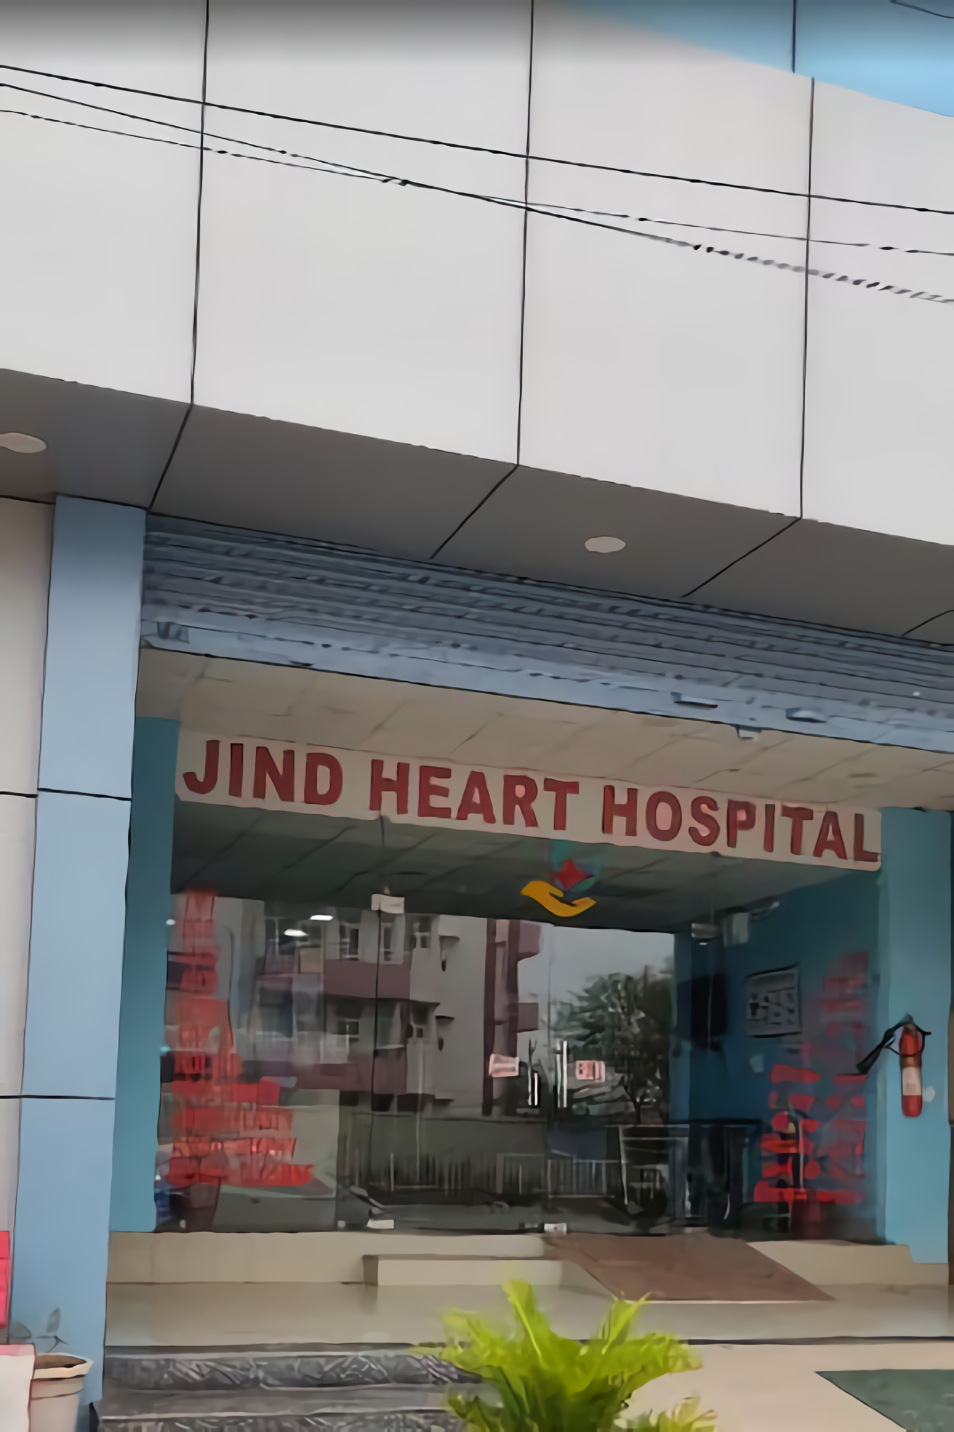 Jind Heart Hospital